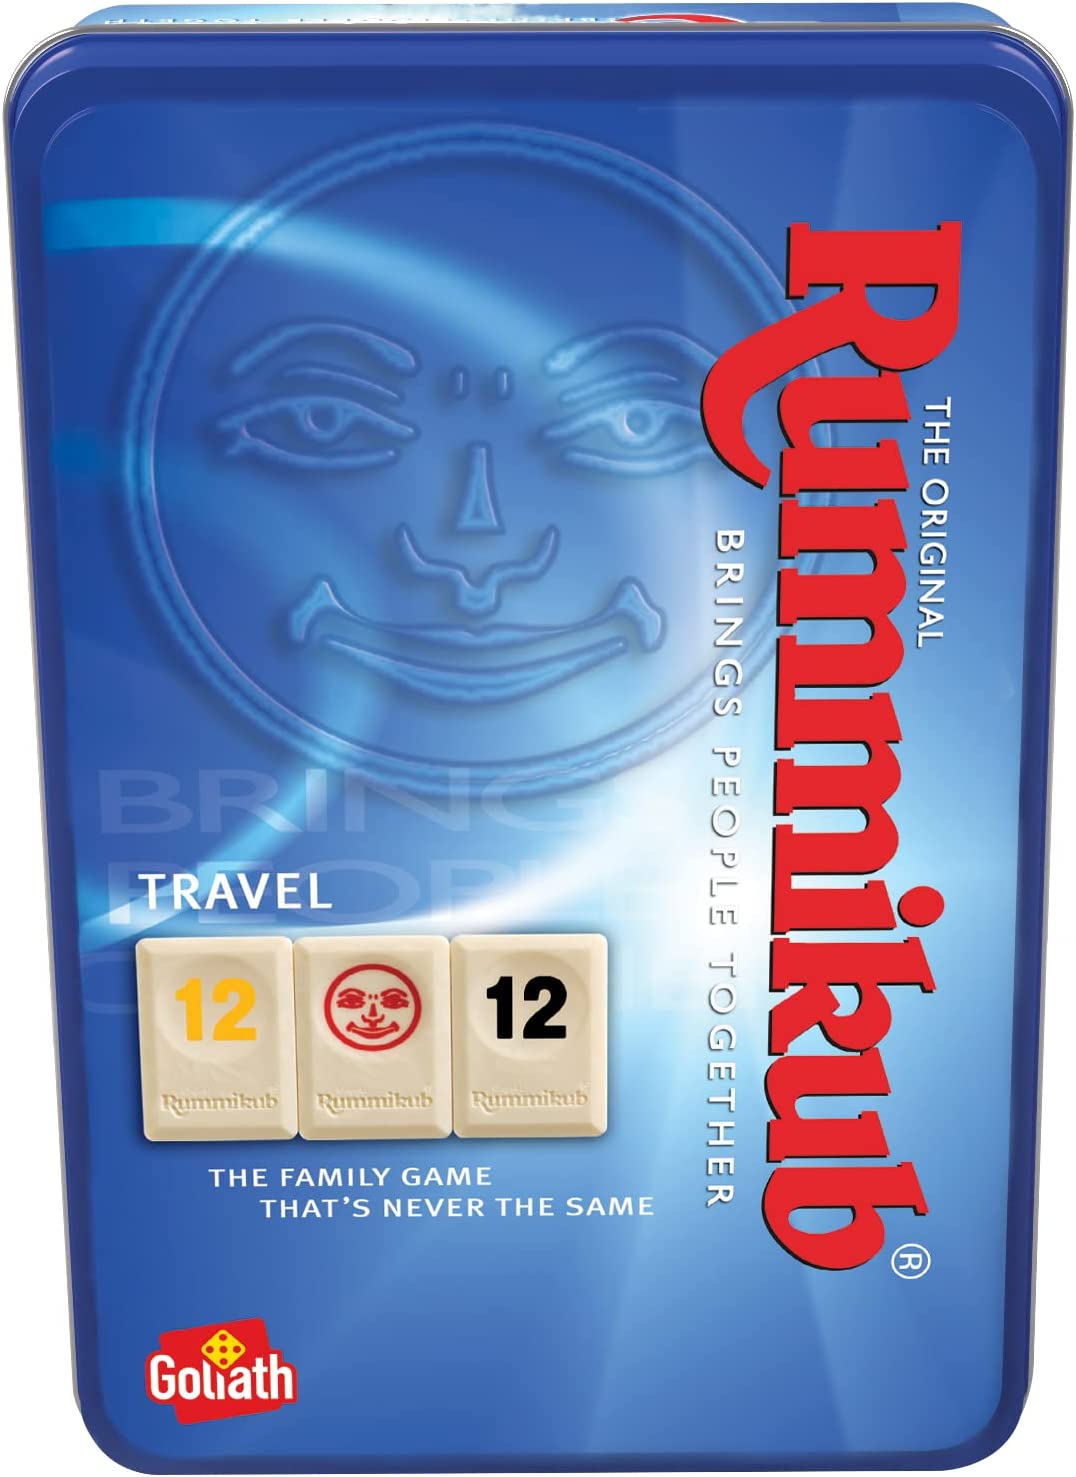 Ver categoría de rummikub travel